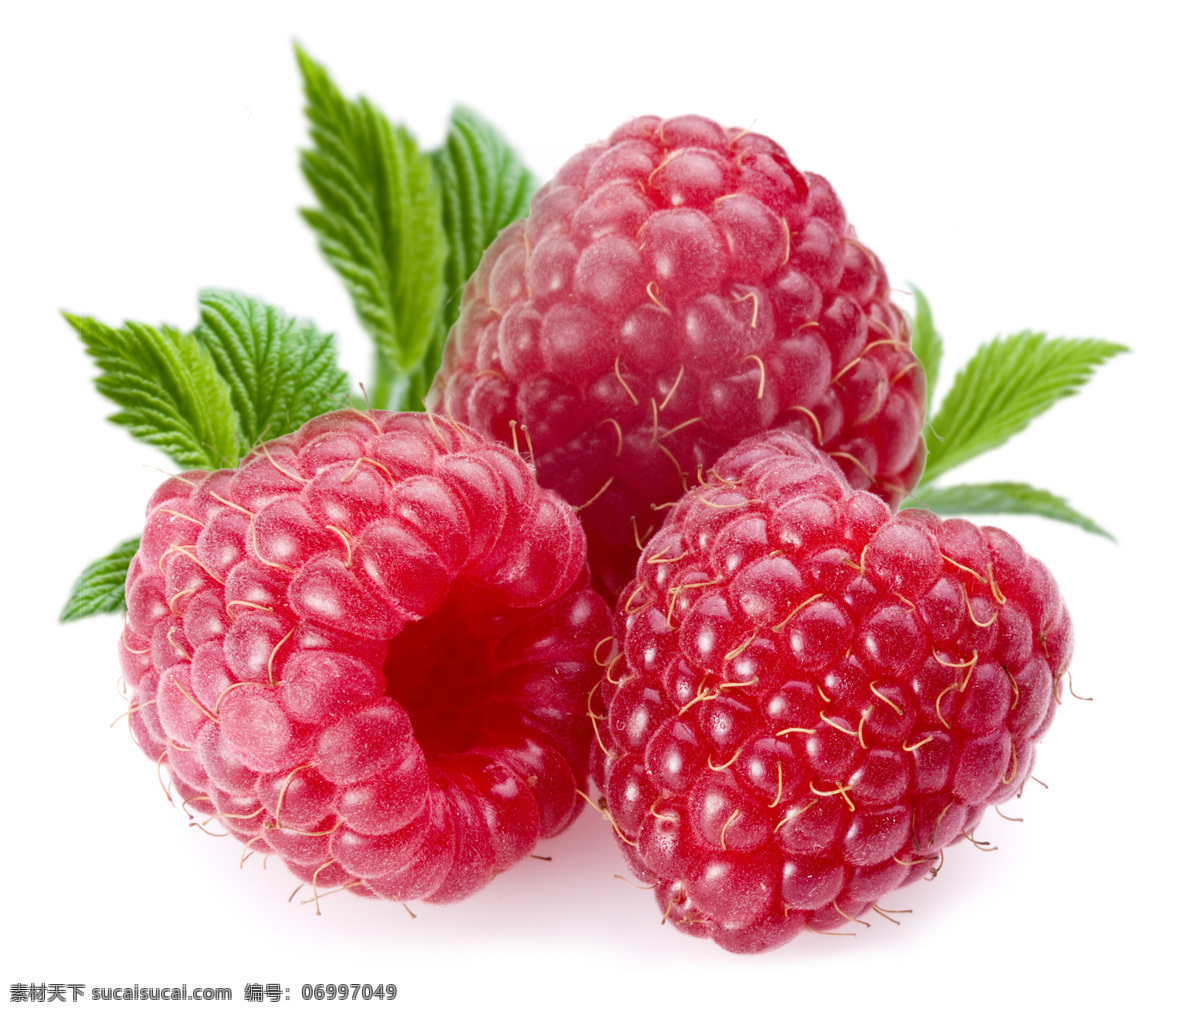 覆盆子 树莓 水果 草莓 新鲜 鲜美 叶子 绿叶 壁纸 诱人 可口 生物世界